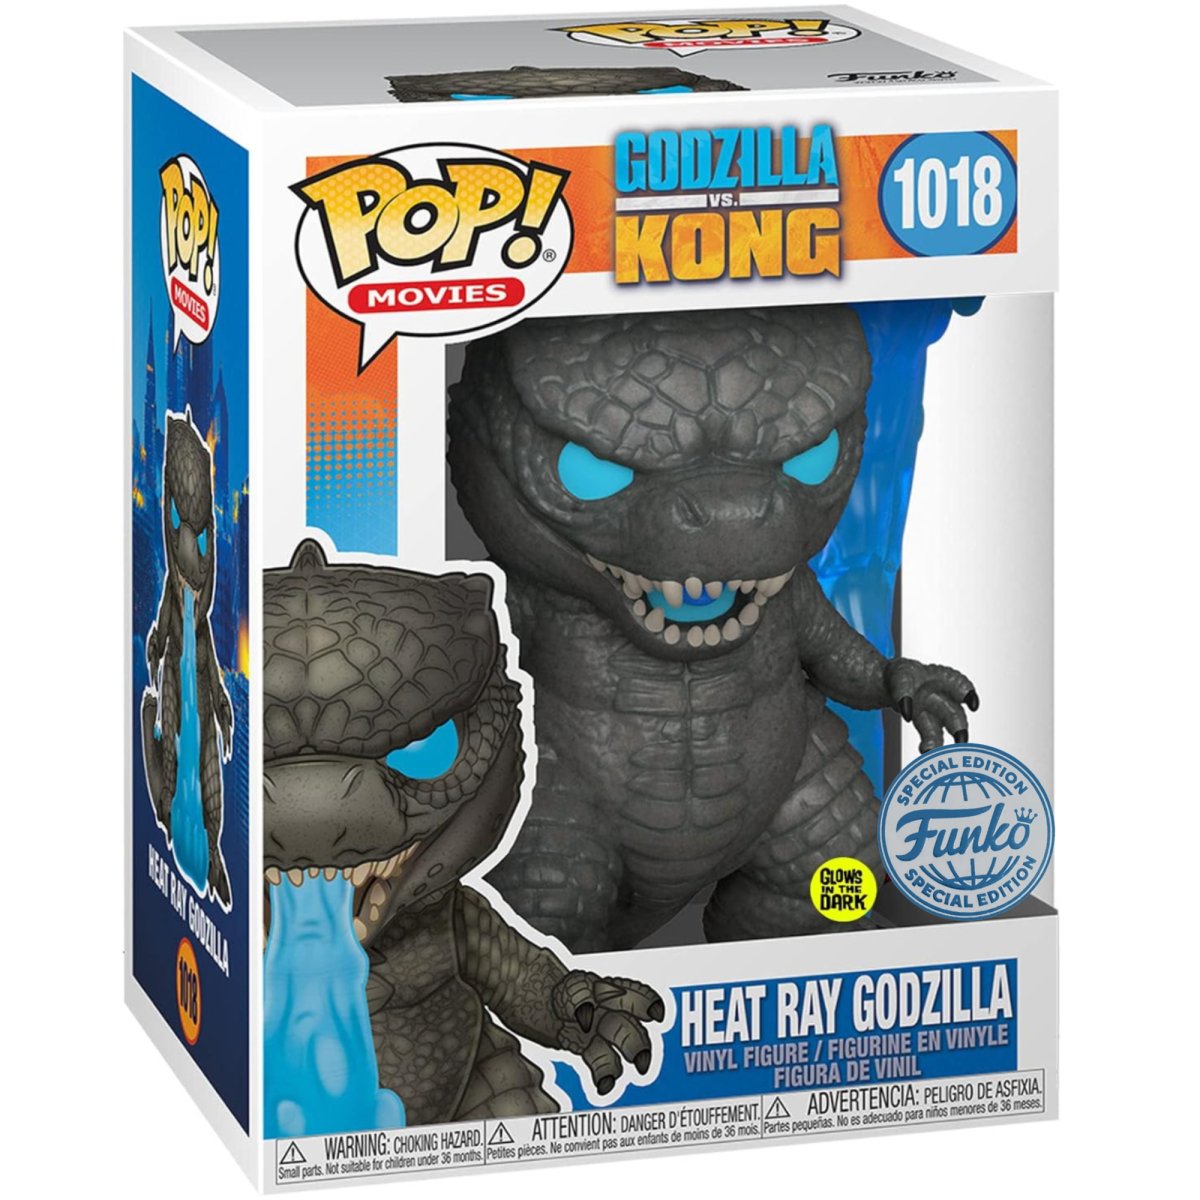 Godzilla vs. Kong - Heat Ray Godzilla (GITD Special Edition) #1018 - Funko Pop! Vinyl Movies - Persona Toys